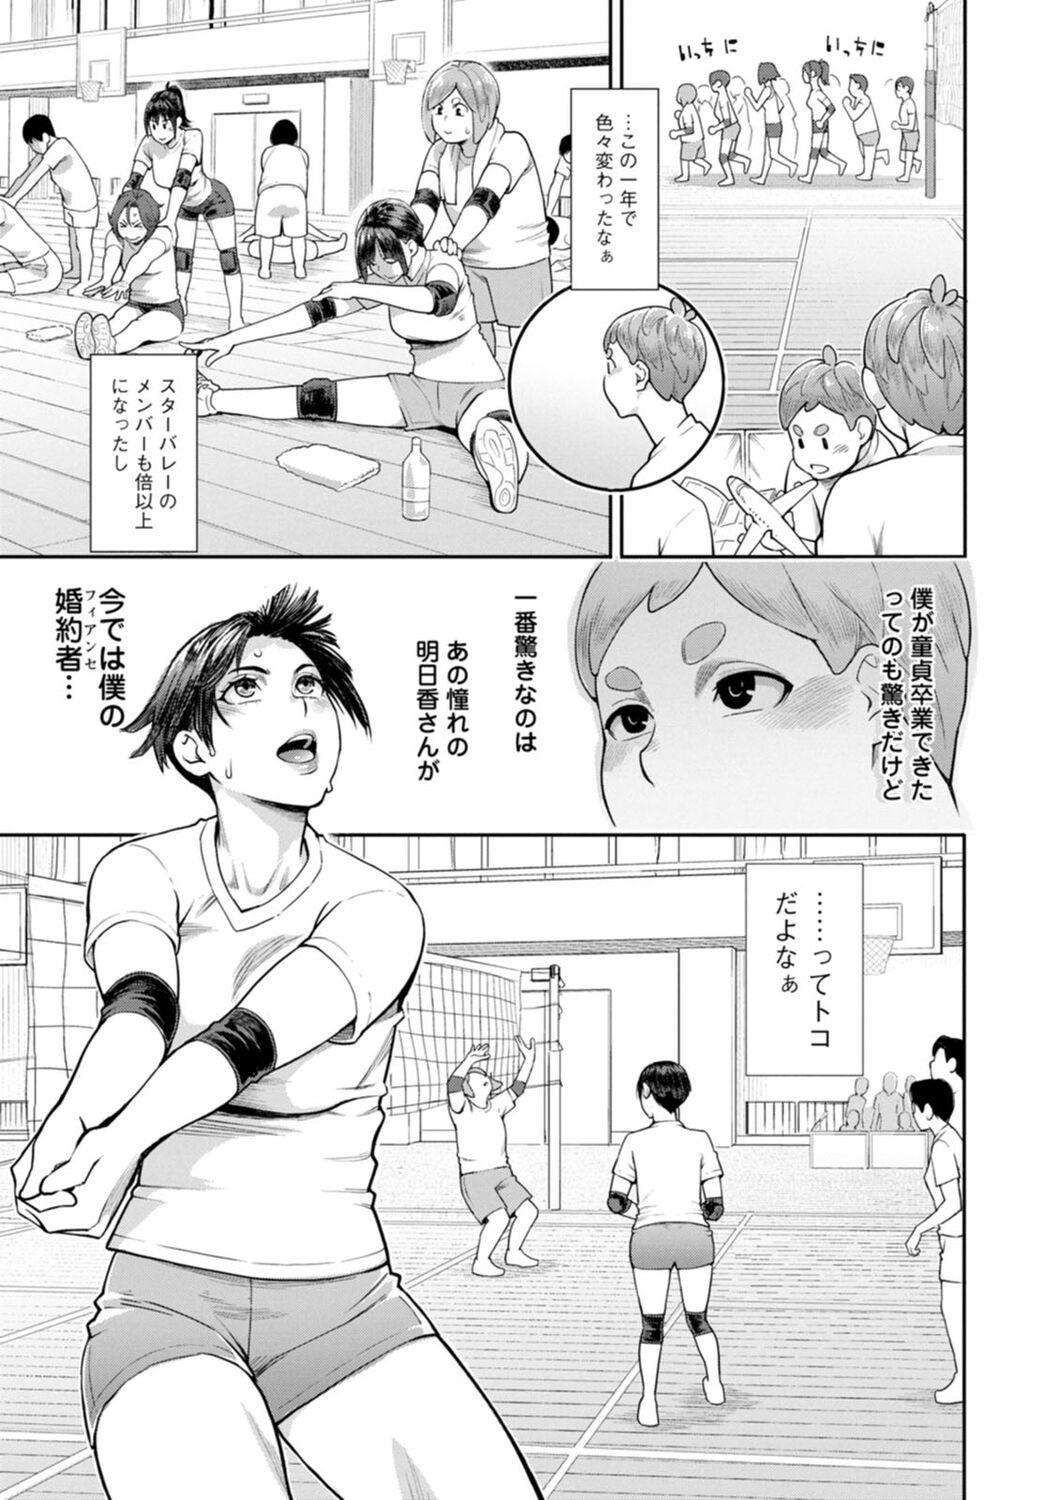 Hoshigaoka Star Volley 149